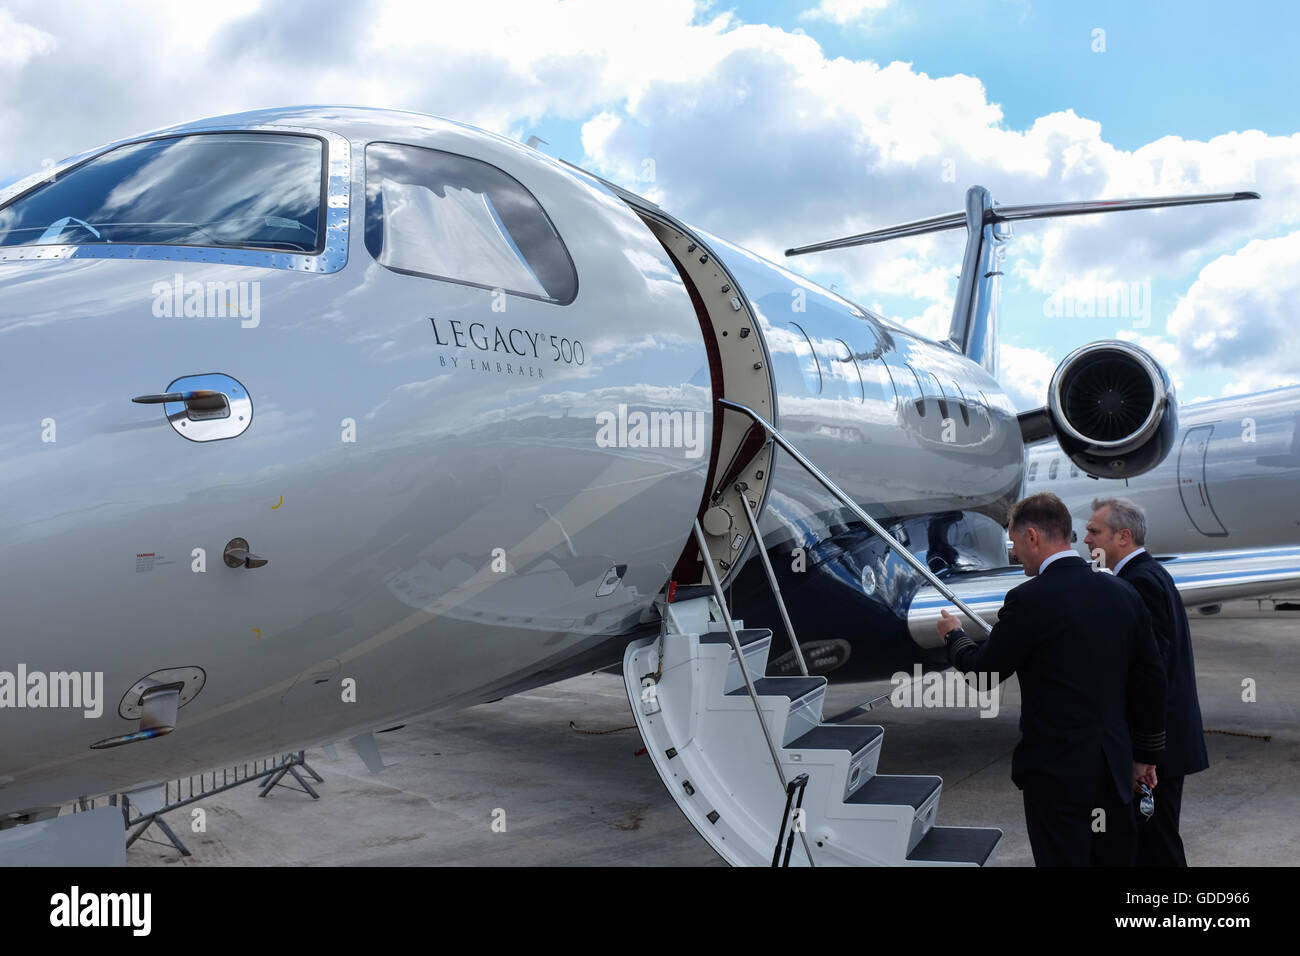 Le jet d'affaires Legacy 500 par Embraer. Banque D'Images